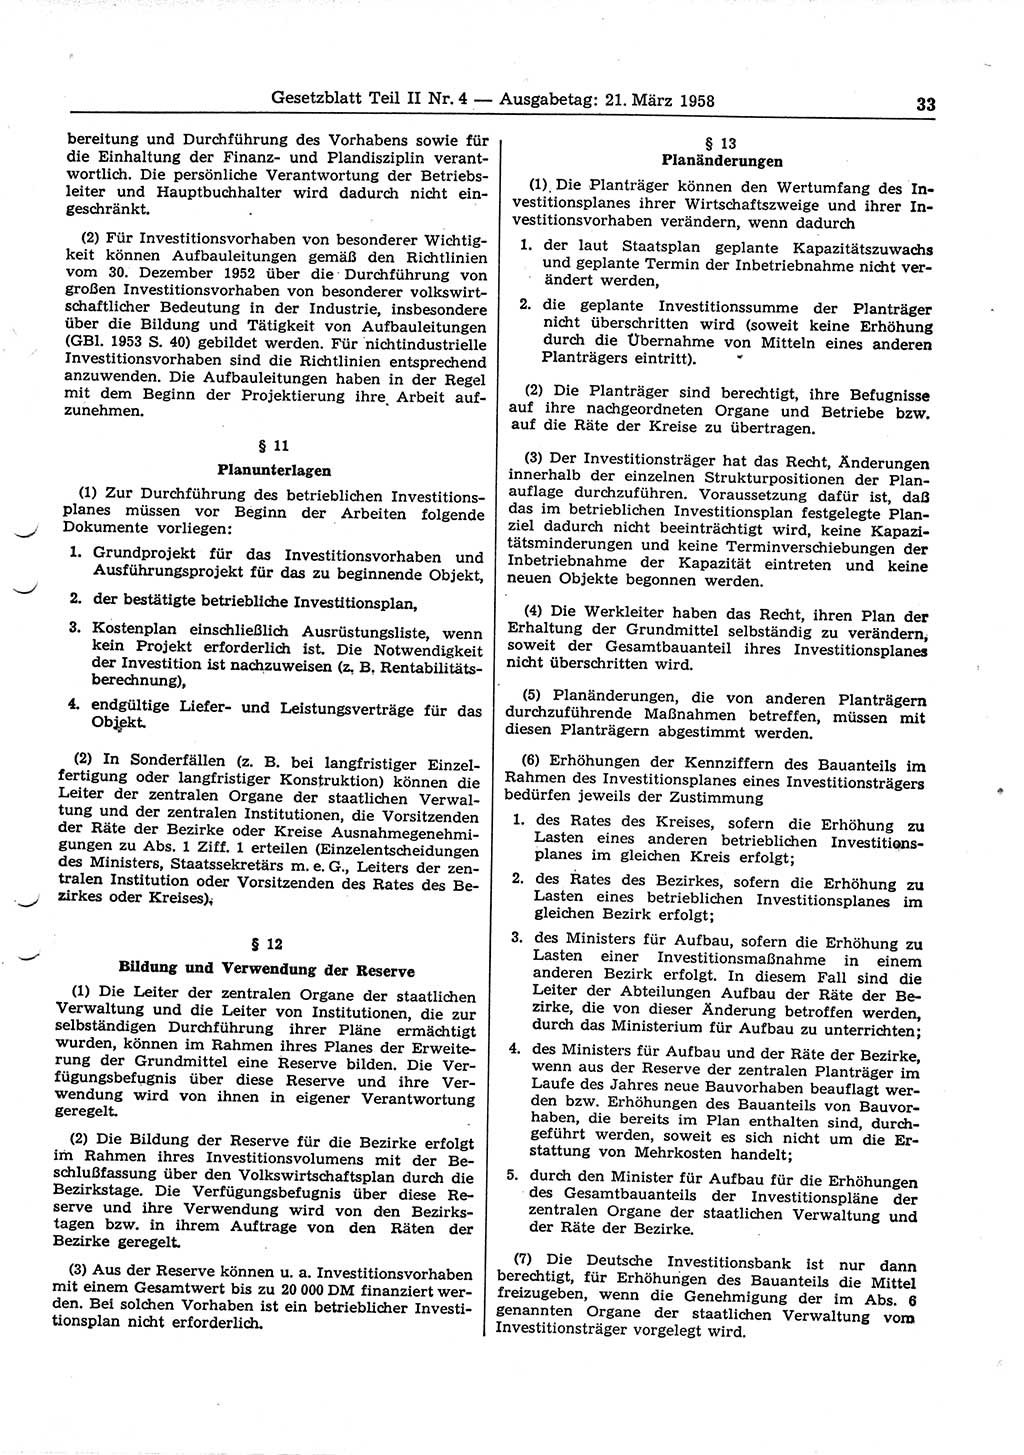 Gesetzblatt (GBl.) der Deutschen Demokratischen Republik (DDR) Teil ⅠⅠ 1958, Seite 33 (GBl. DDR ⅠⅠ 1958, S. 33)